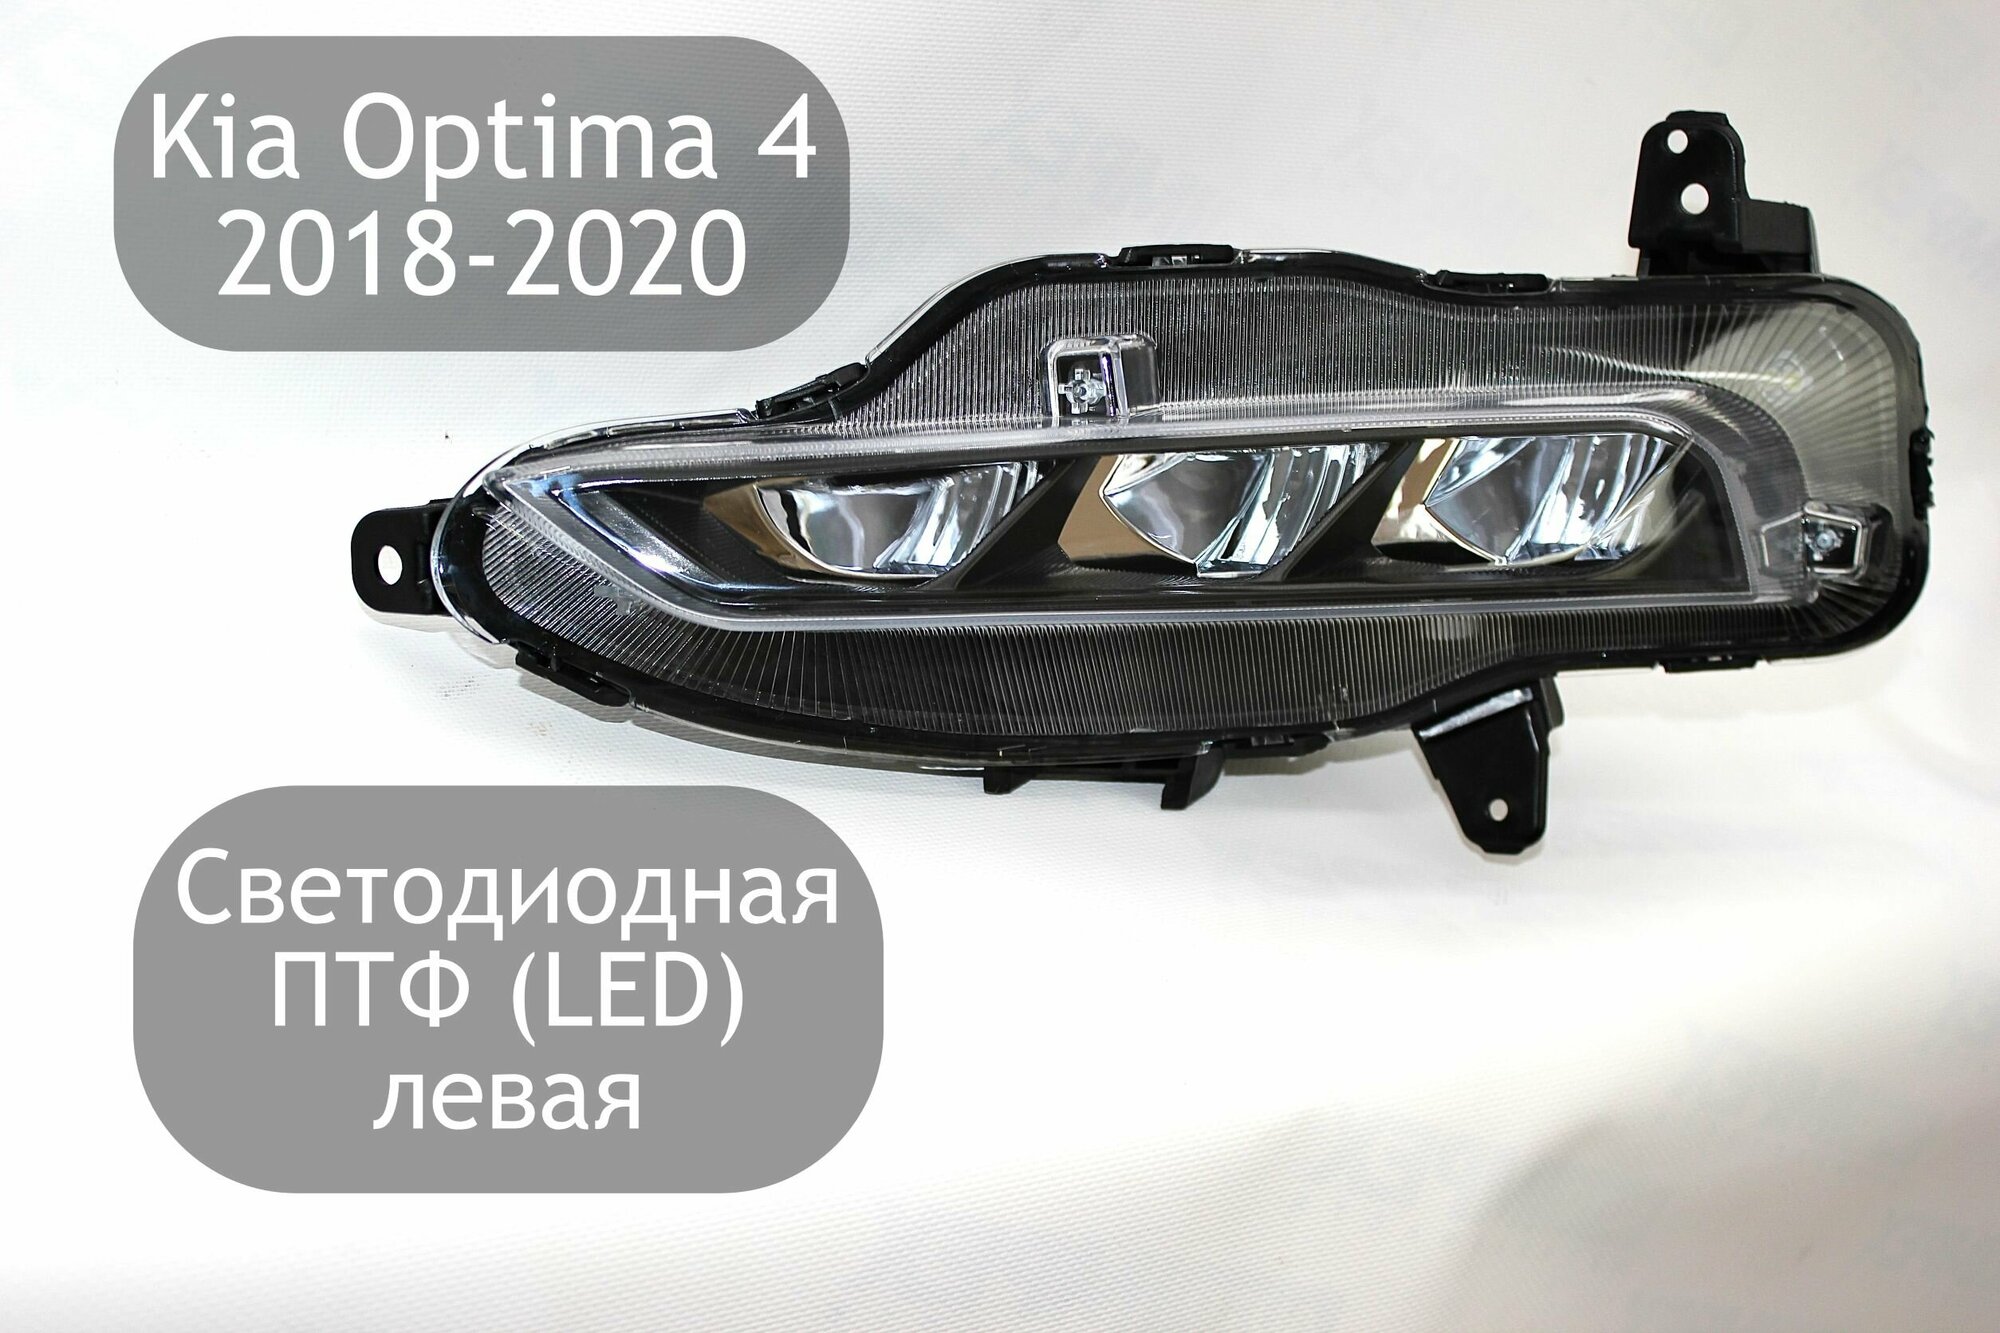 Светодиодная противотуманная фара левая для Kia Optima 4 2018-2020 (рестайлинг) ПТФ LED